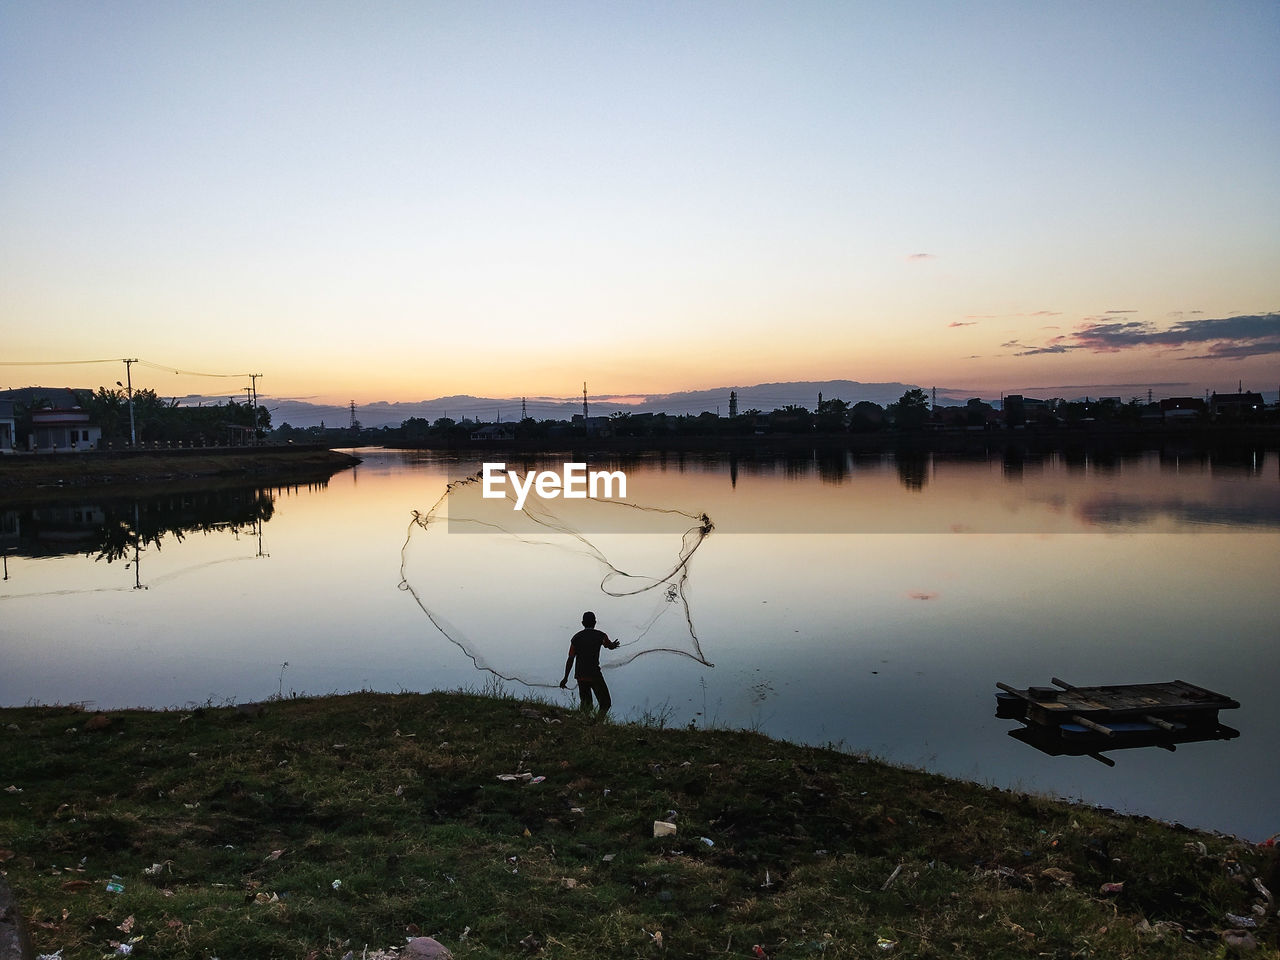 Fisherman holding fishing net by lake during sunset